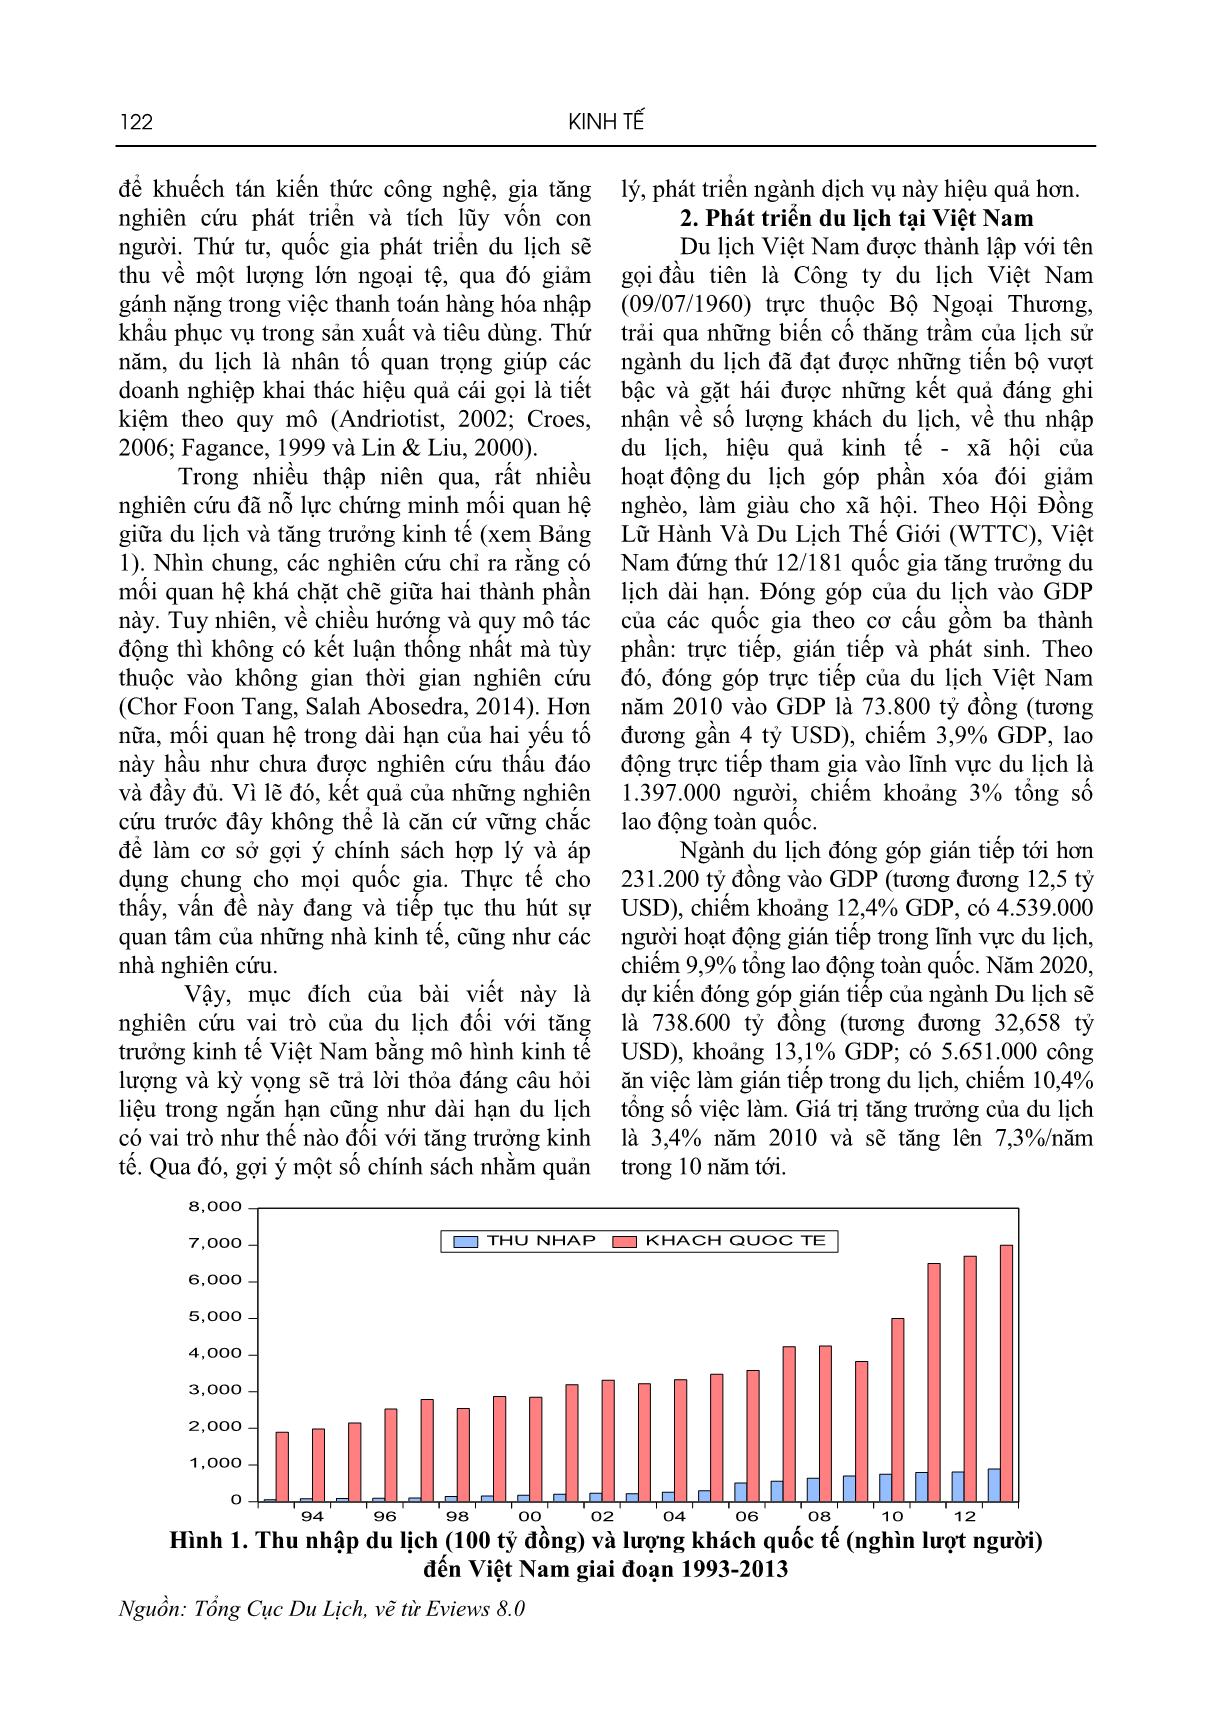 Vai trò của du lịch đối với tăng trưởng kinh tế Việt Nam trang 2